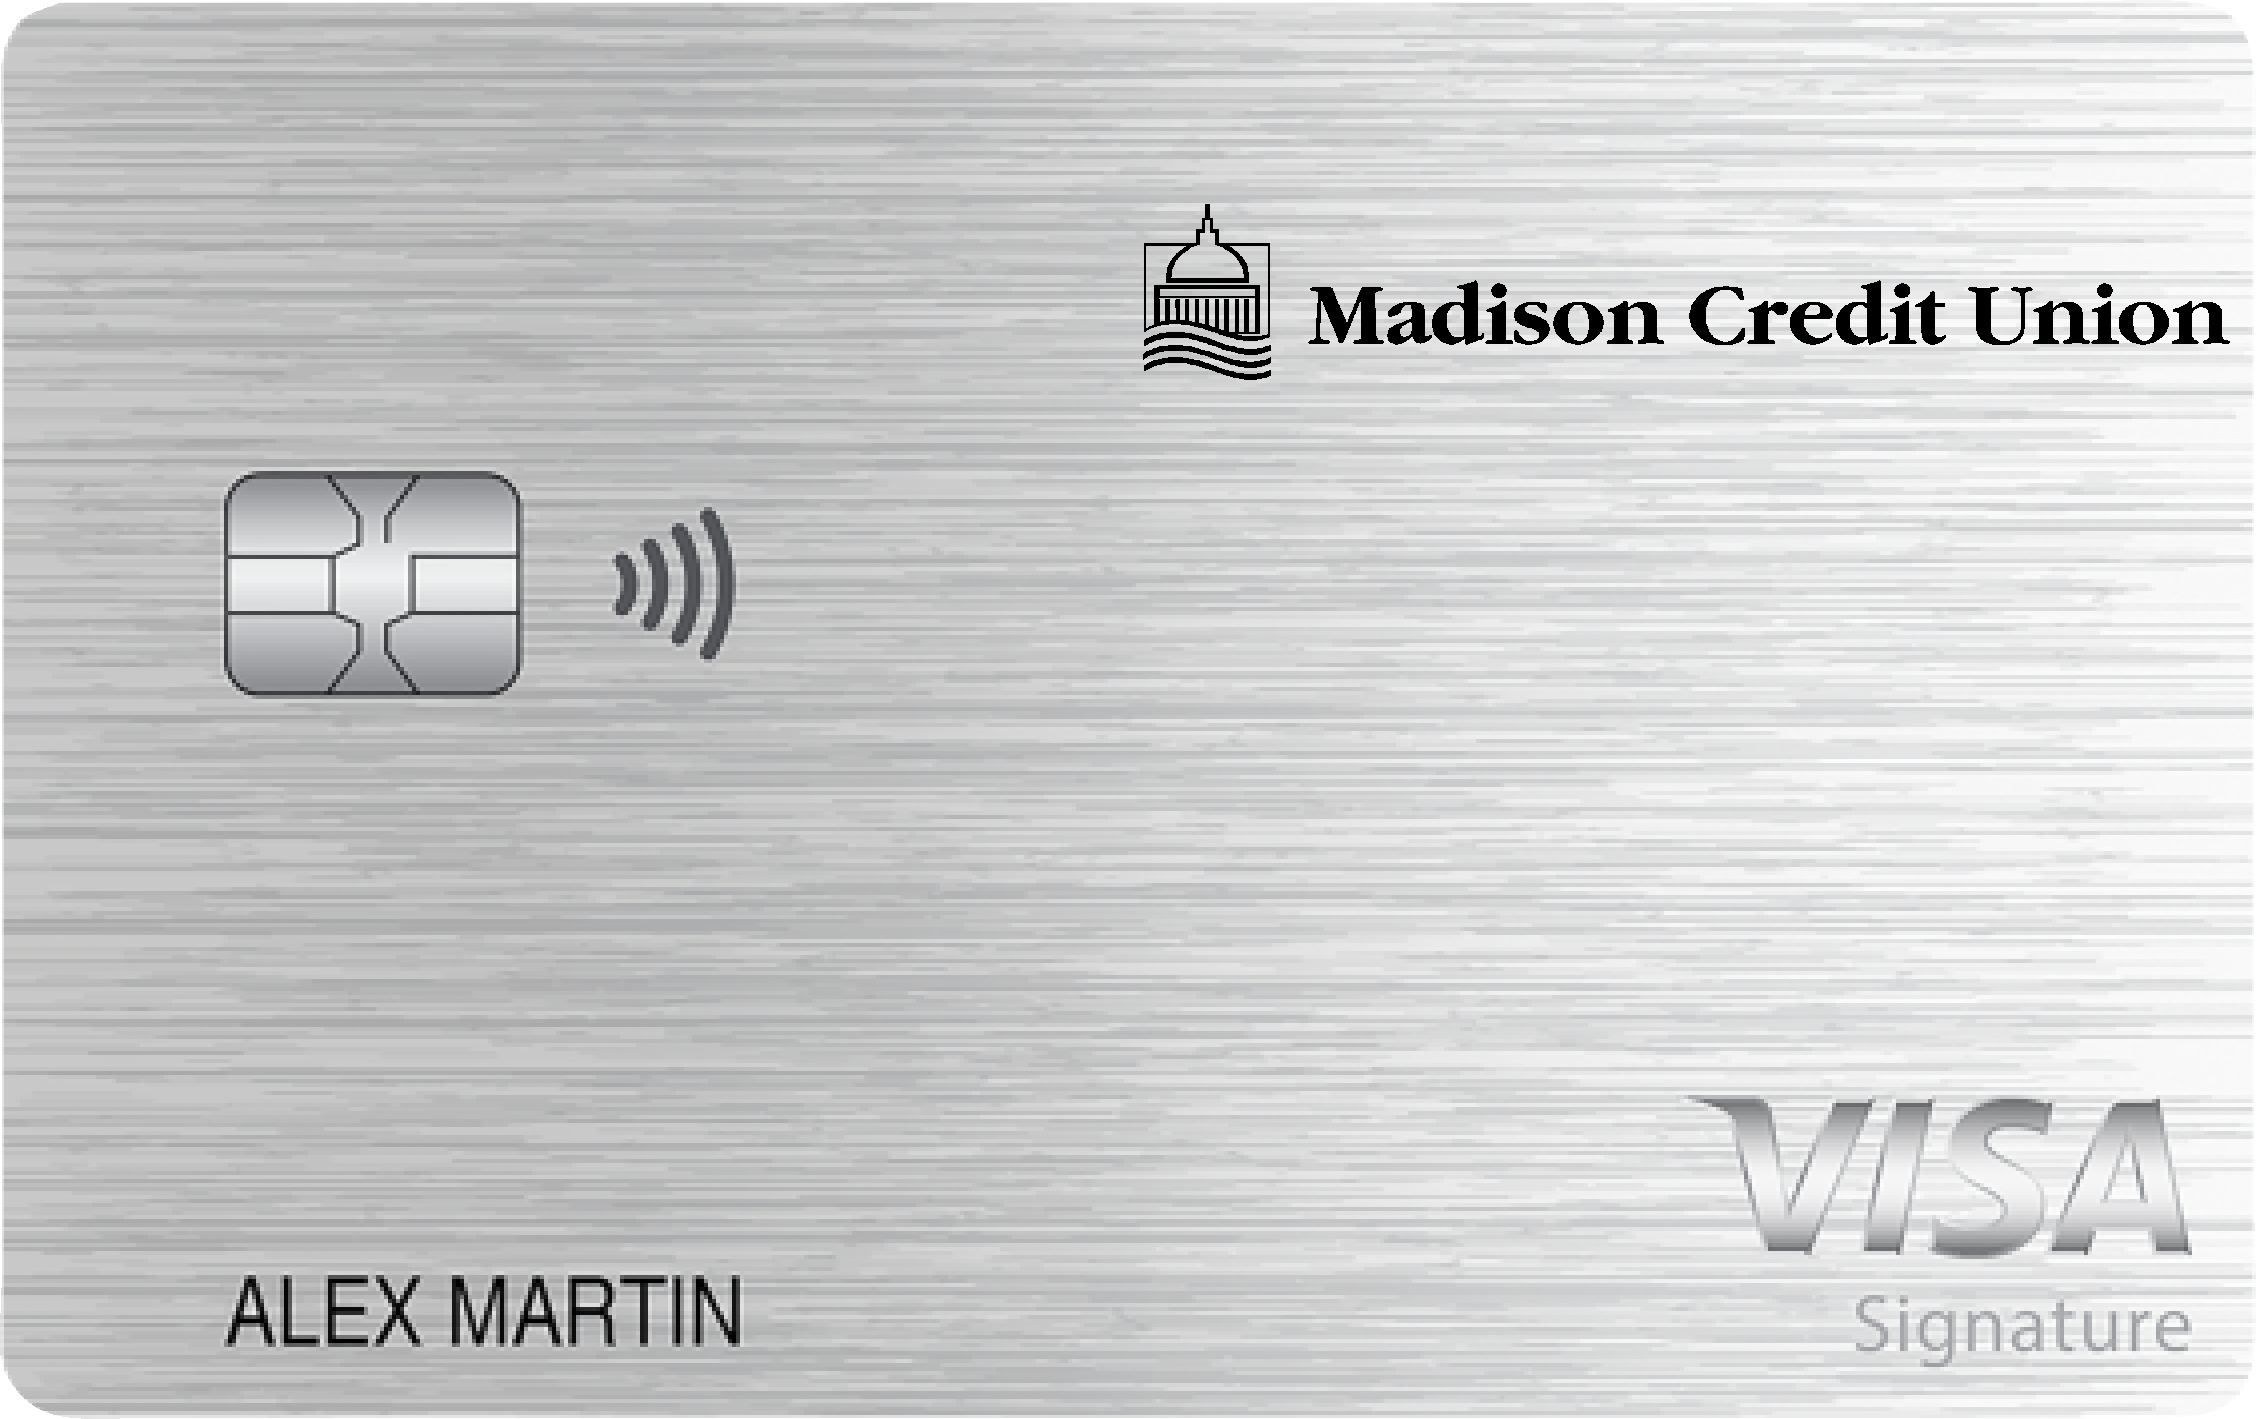 Madison Credit Union